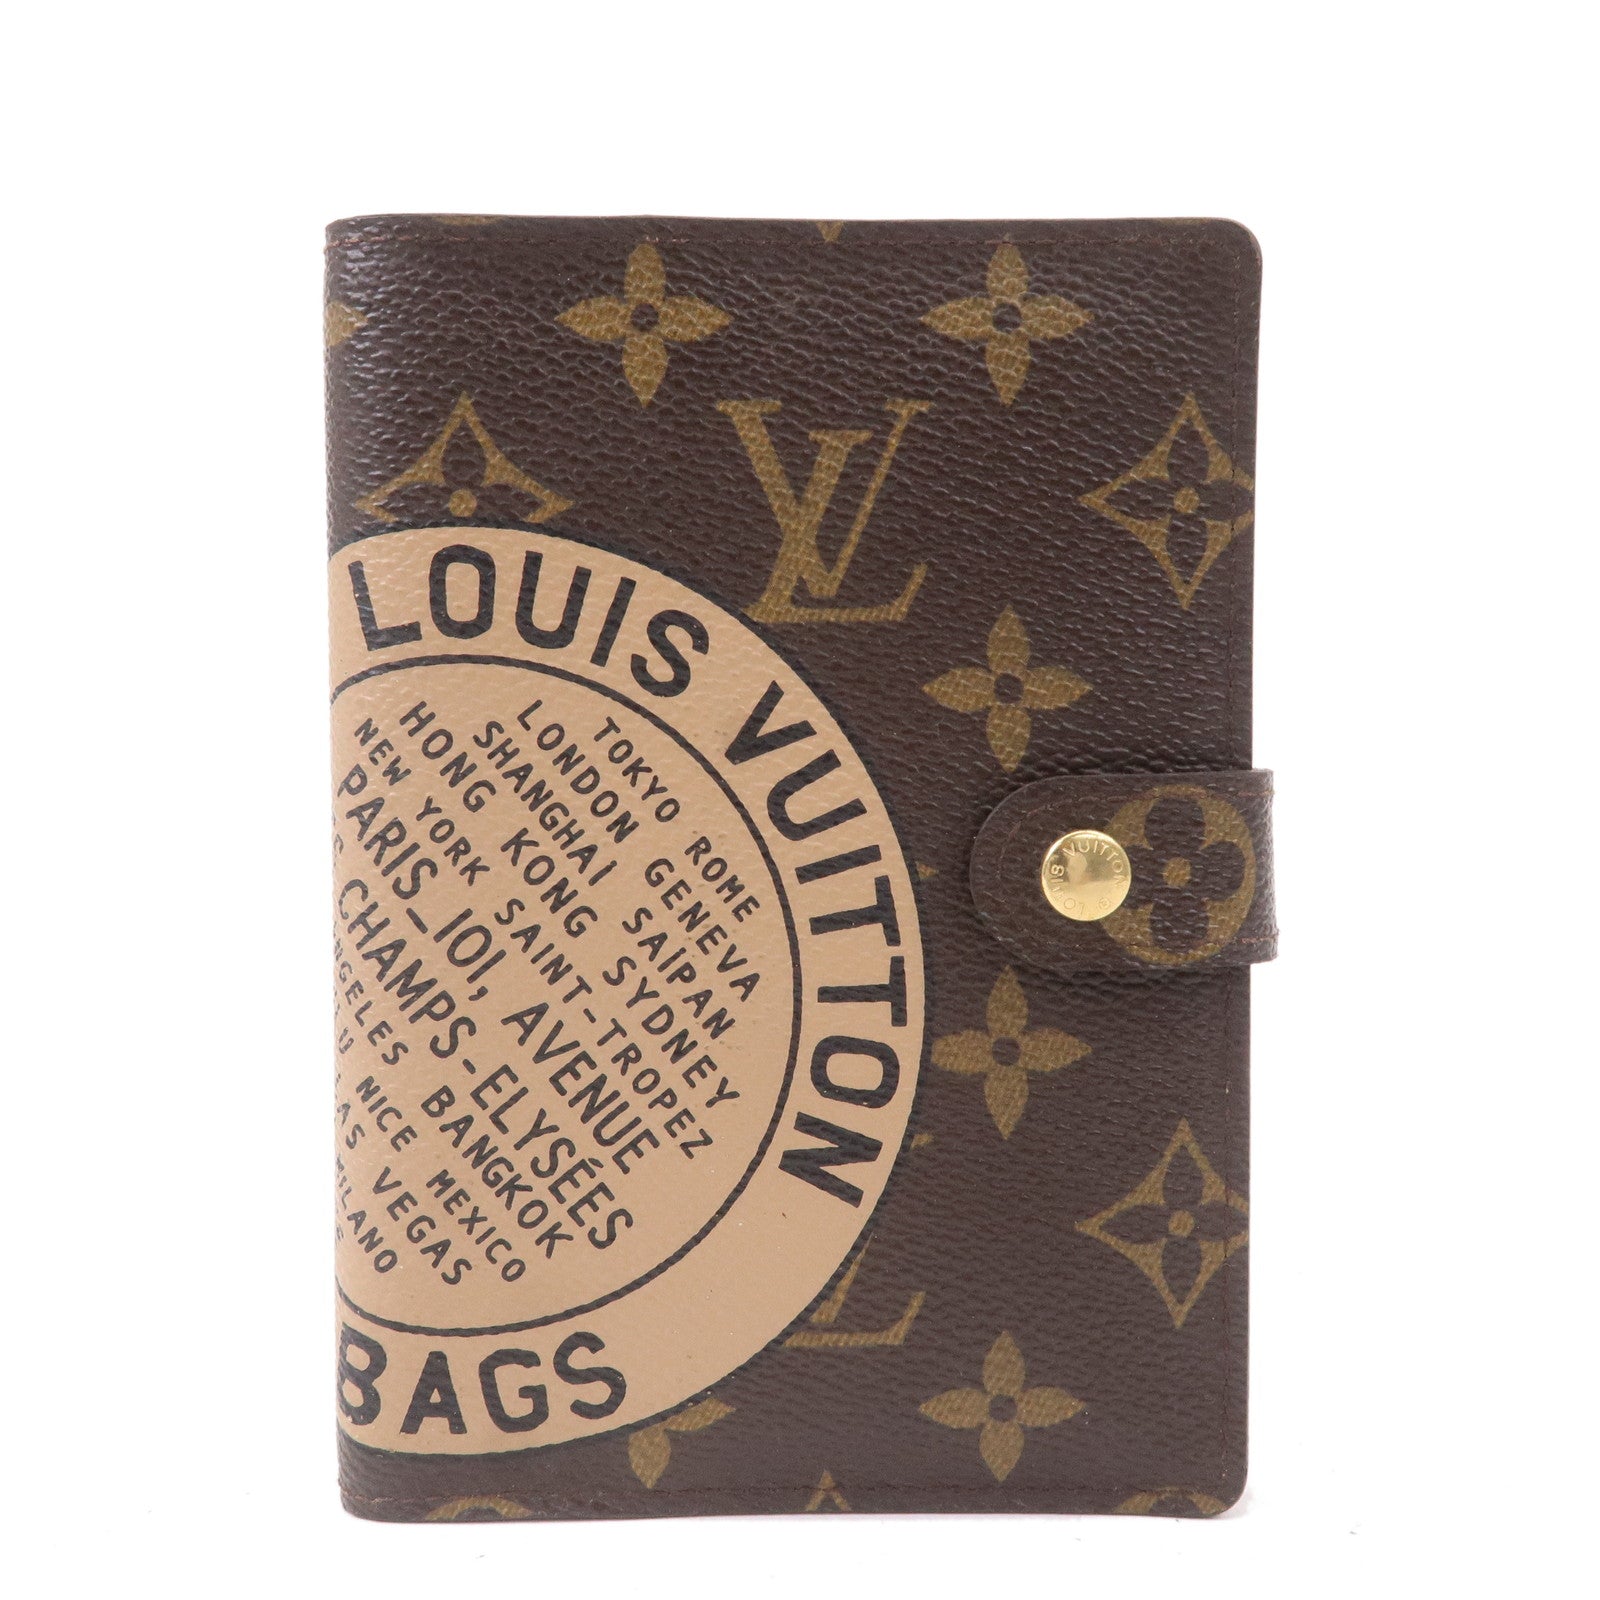 Louis Vuitton- a vintage brown check Damier Ebene Agenda case